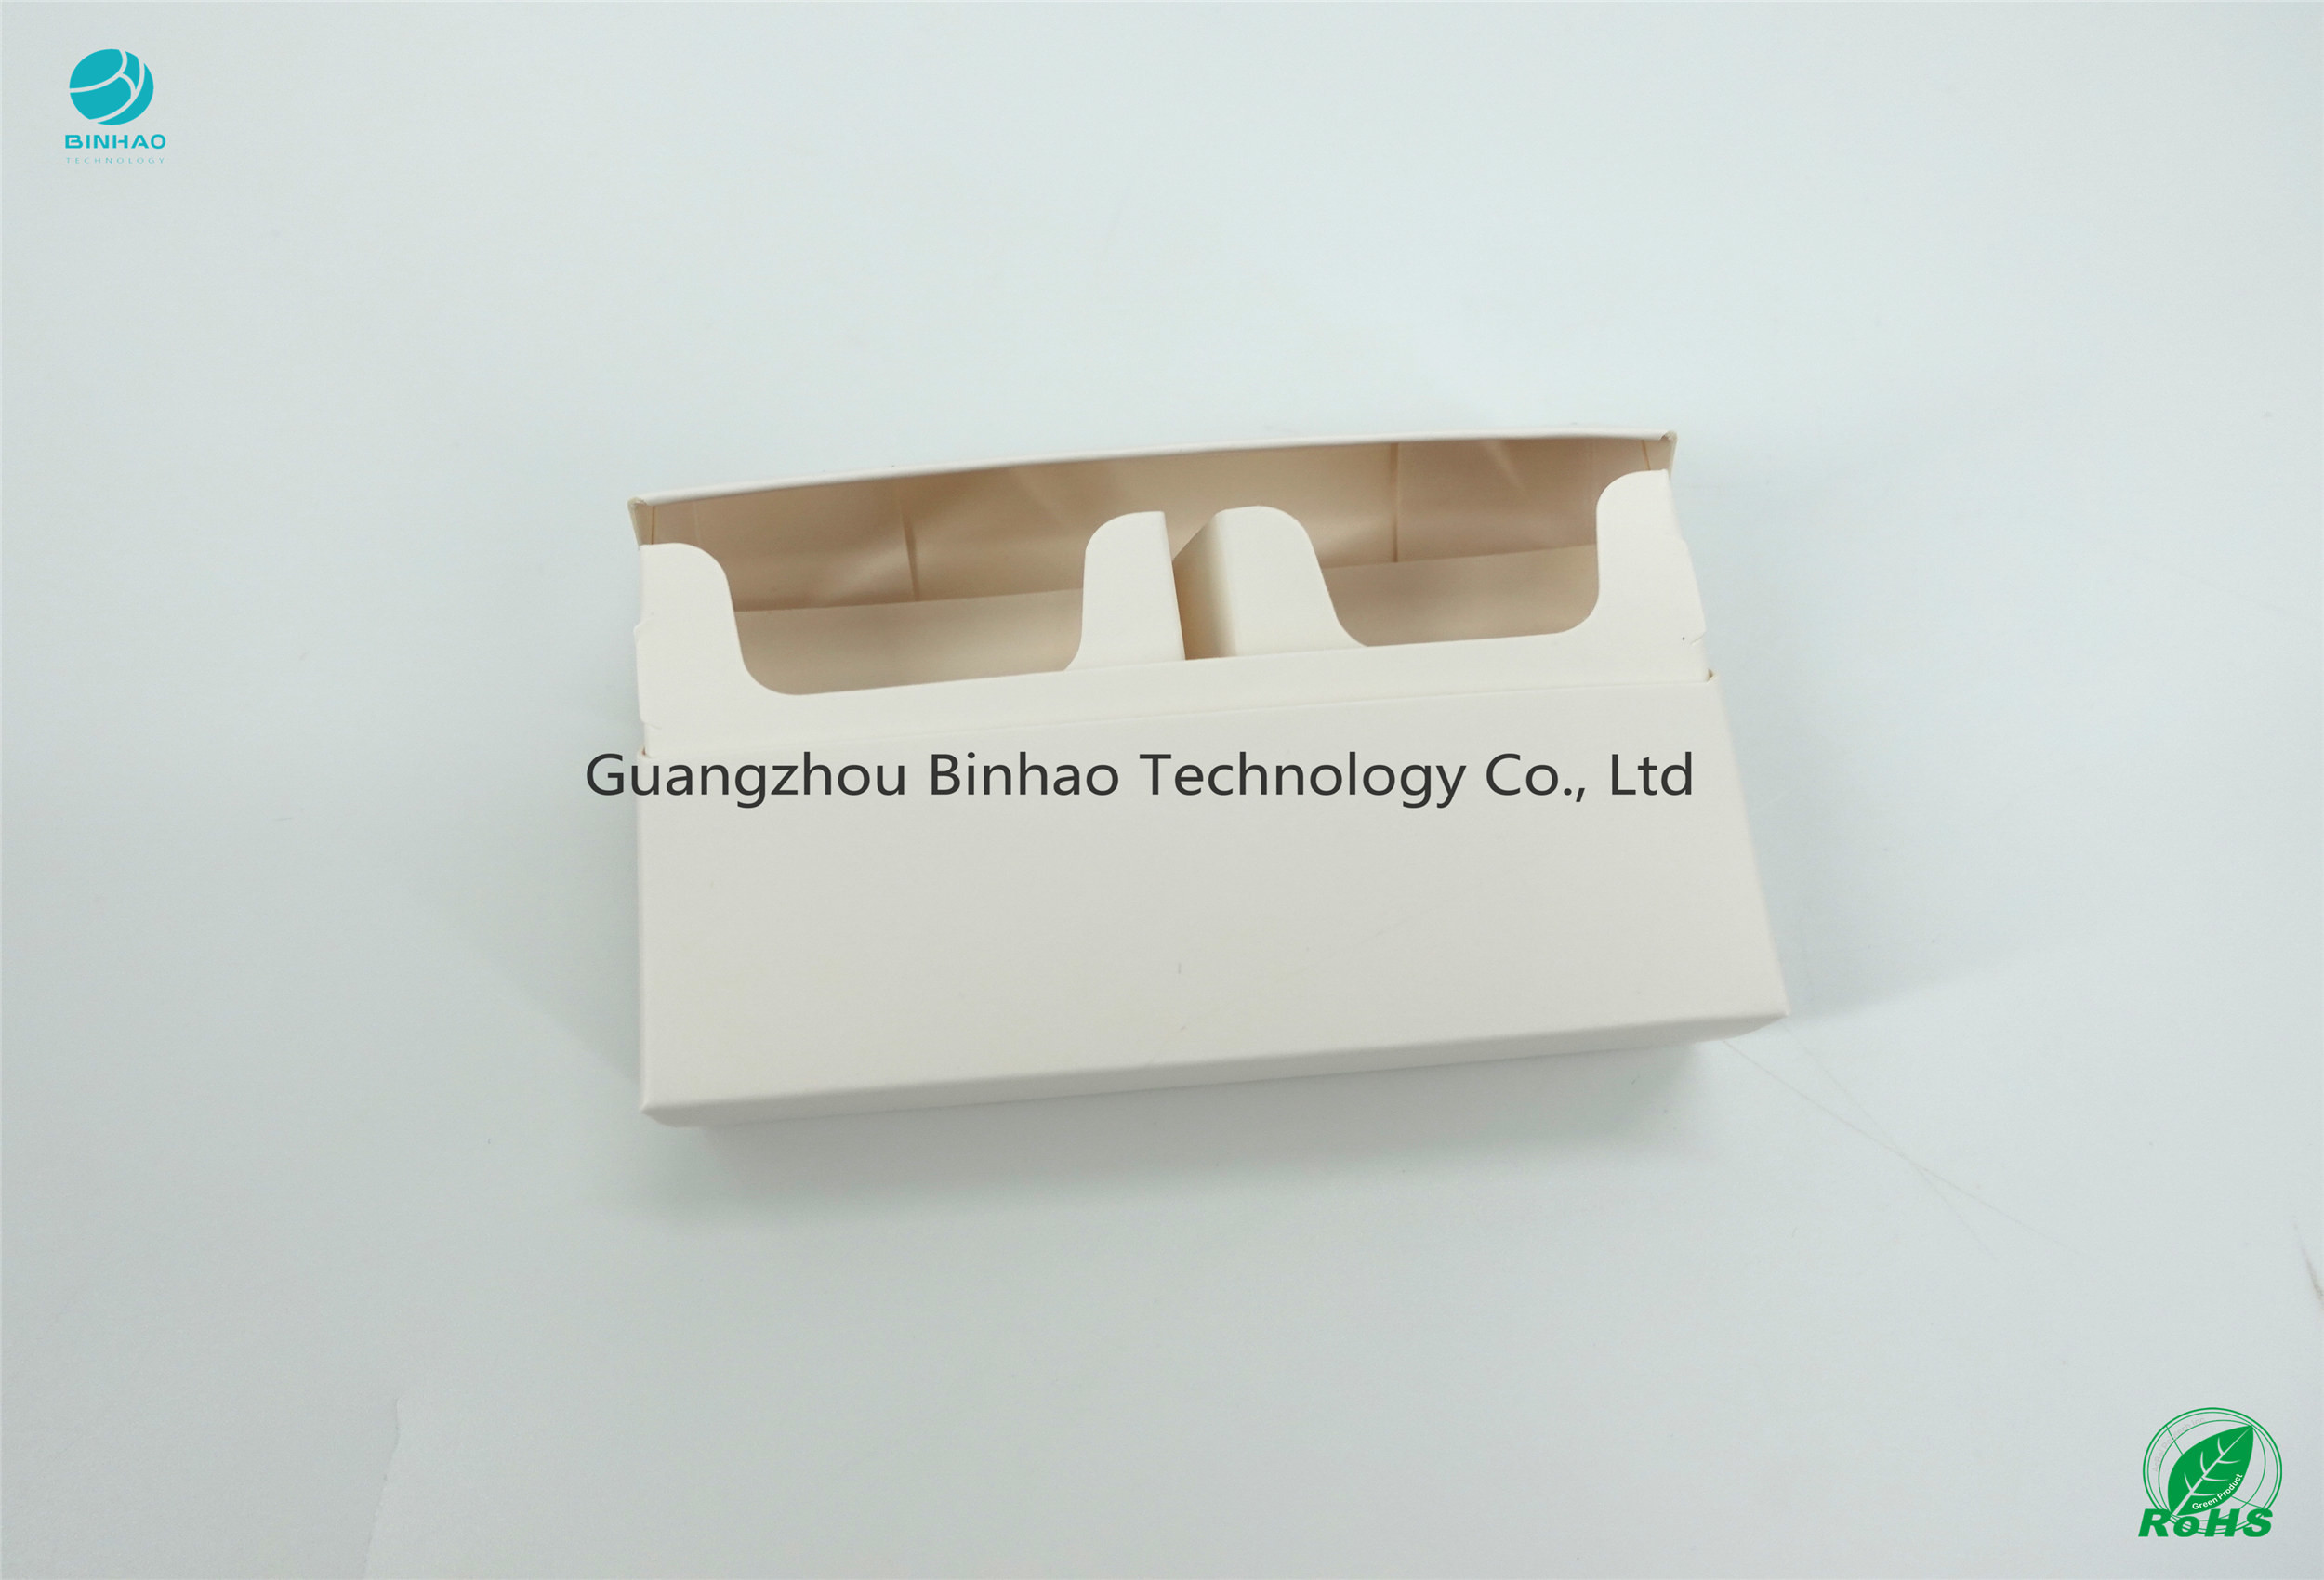 Imprimir de papel branco liso das caixas dos materiais do pacote do E-cigarro do cartão 220gsm-230gsm Grammage HNB